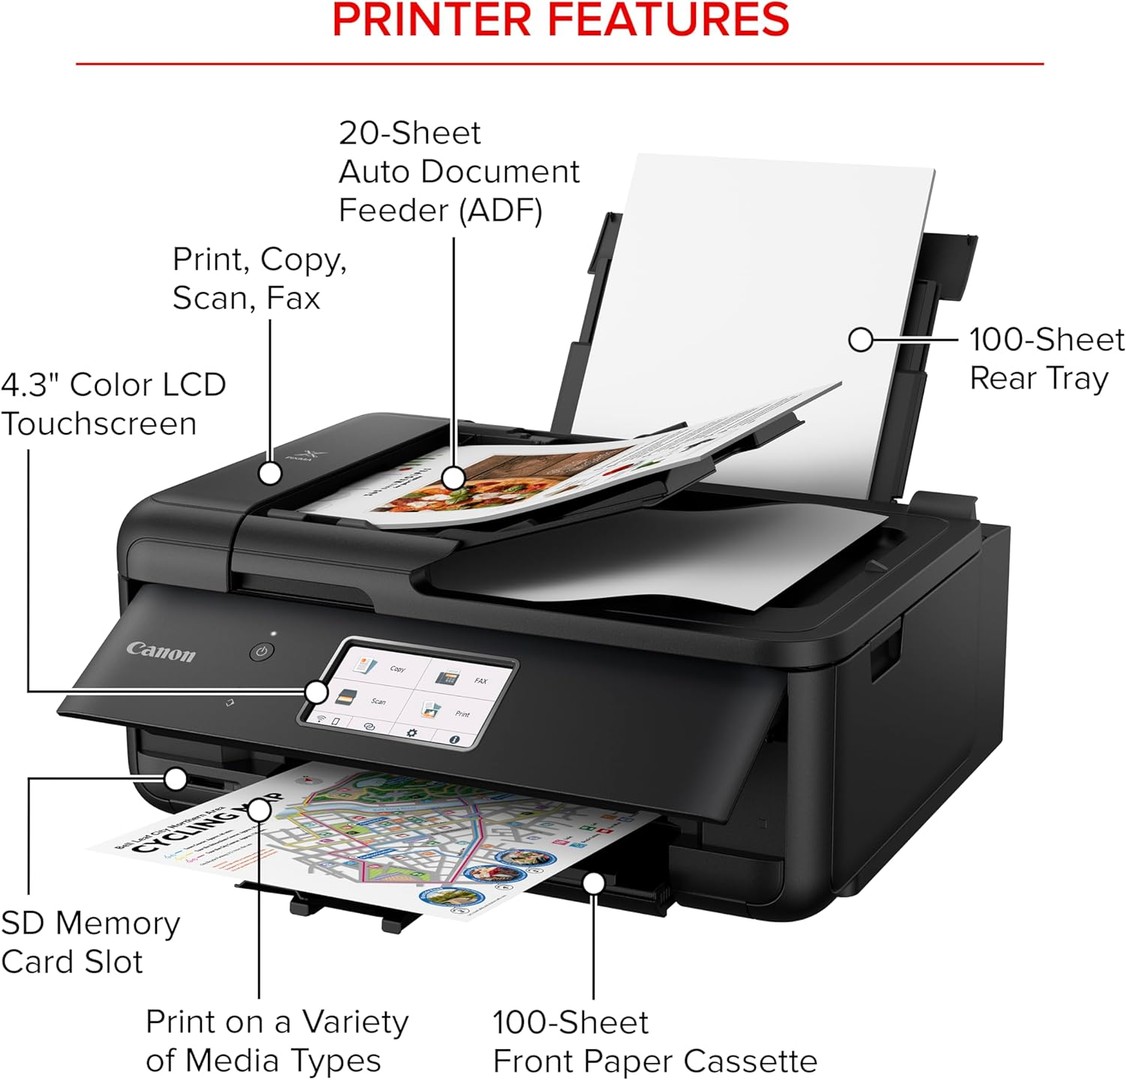 impresoras y scanners - Impresora Canon PIXMA TR8620a Multifuncional, fax, alimentador automático ADF 4